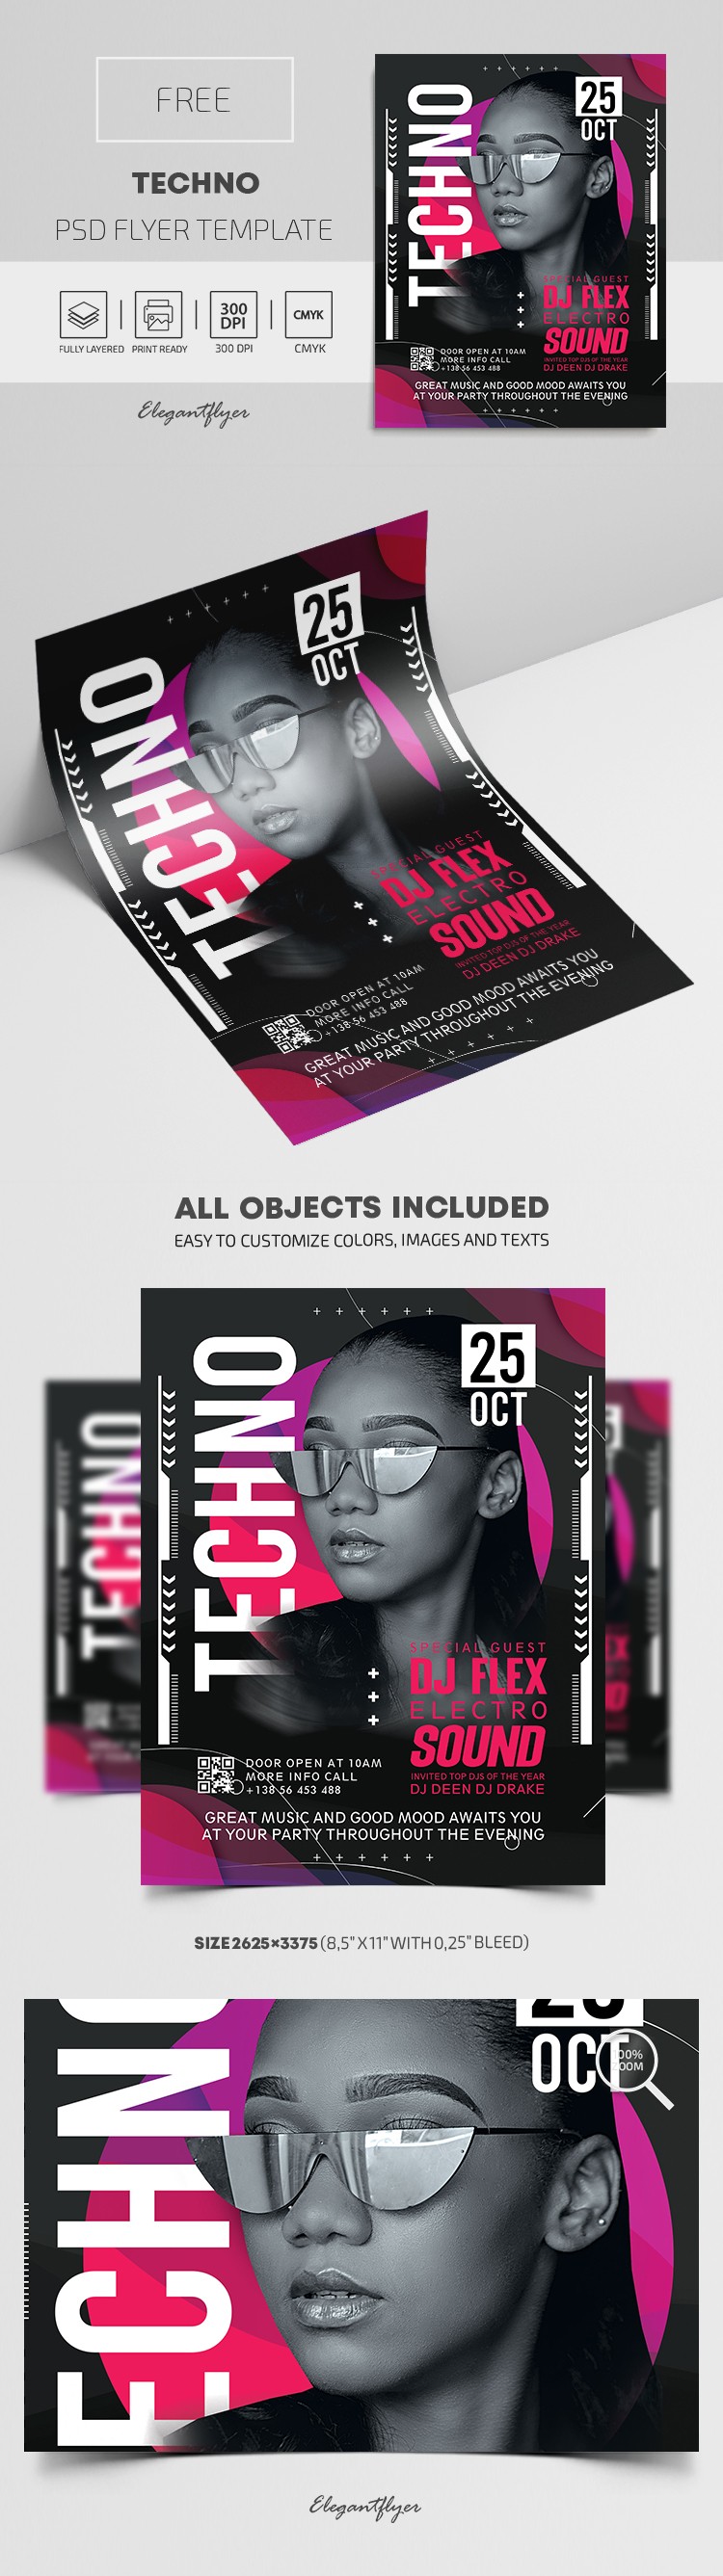 Techno Flyer by ElegantFlyer